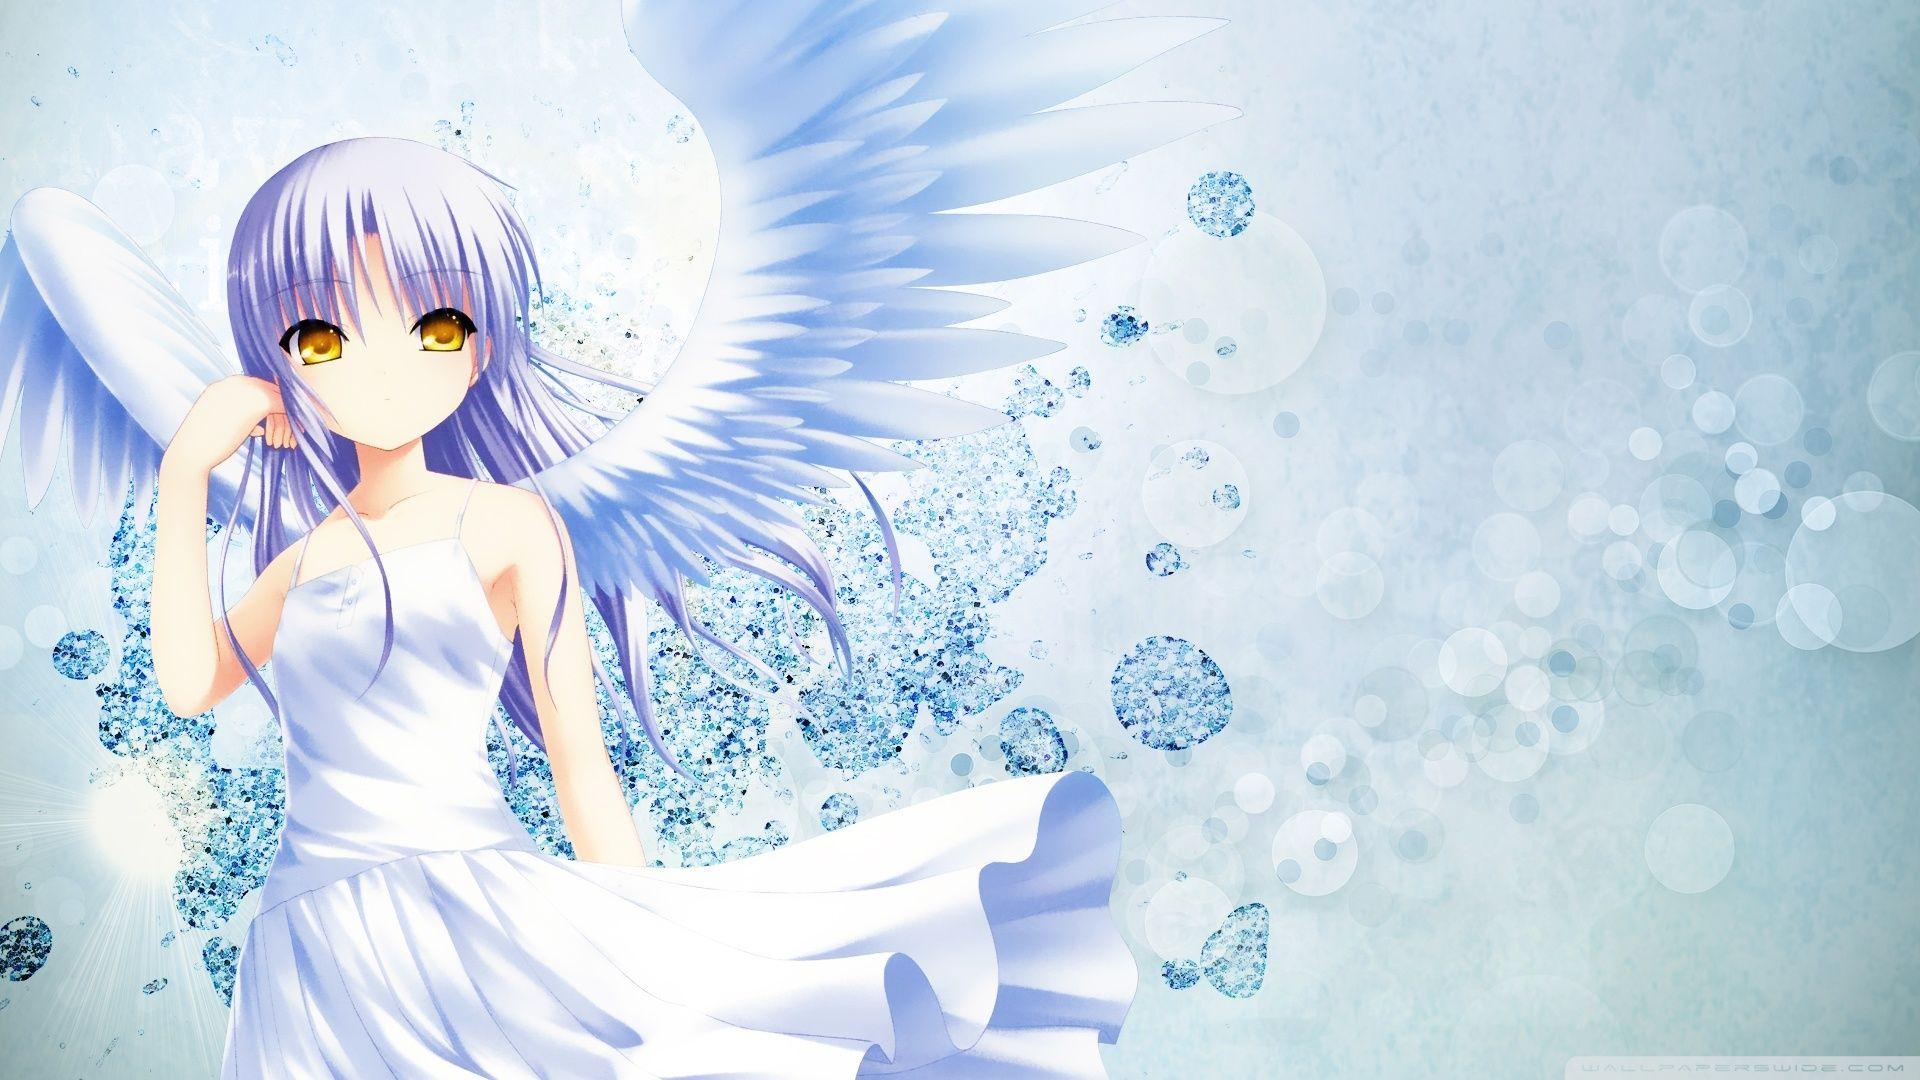 Anime Angel HD Wallpaper by Mogkaraage